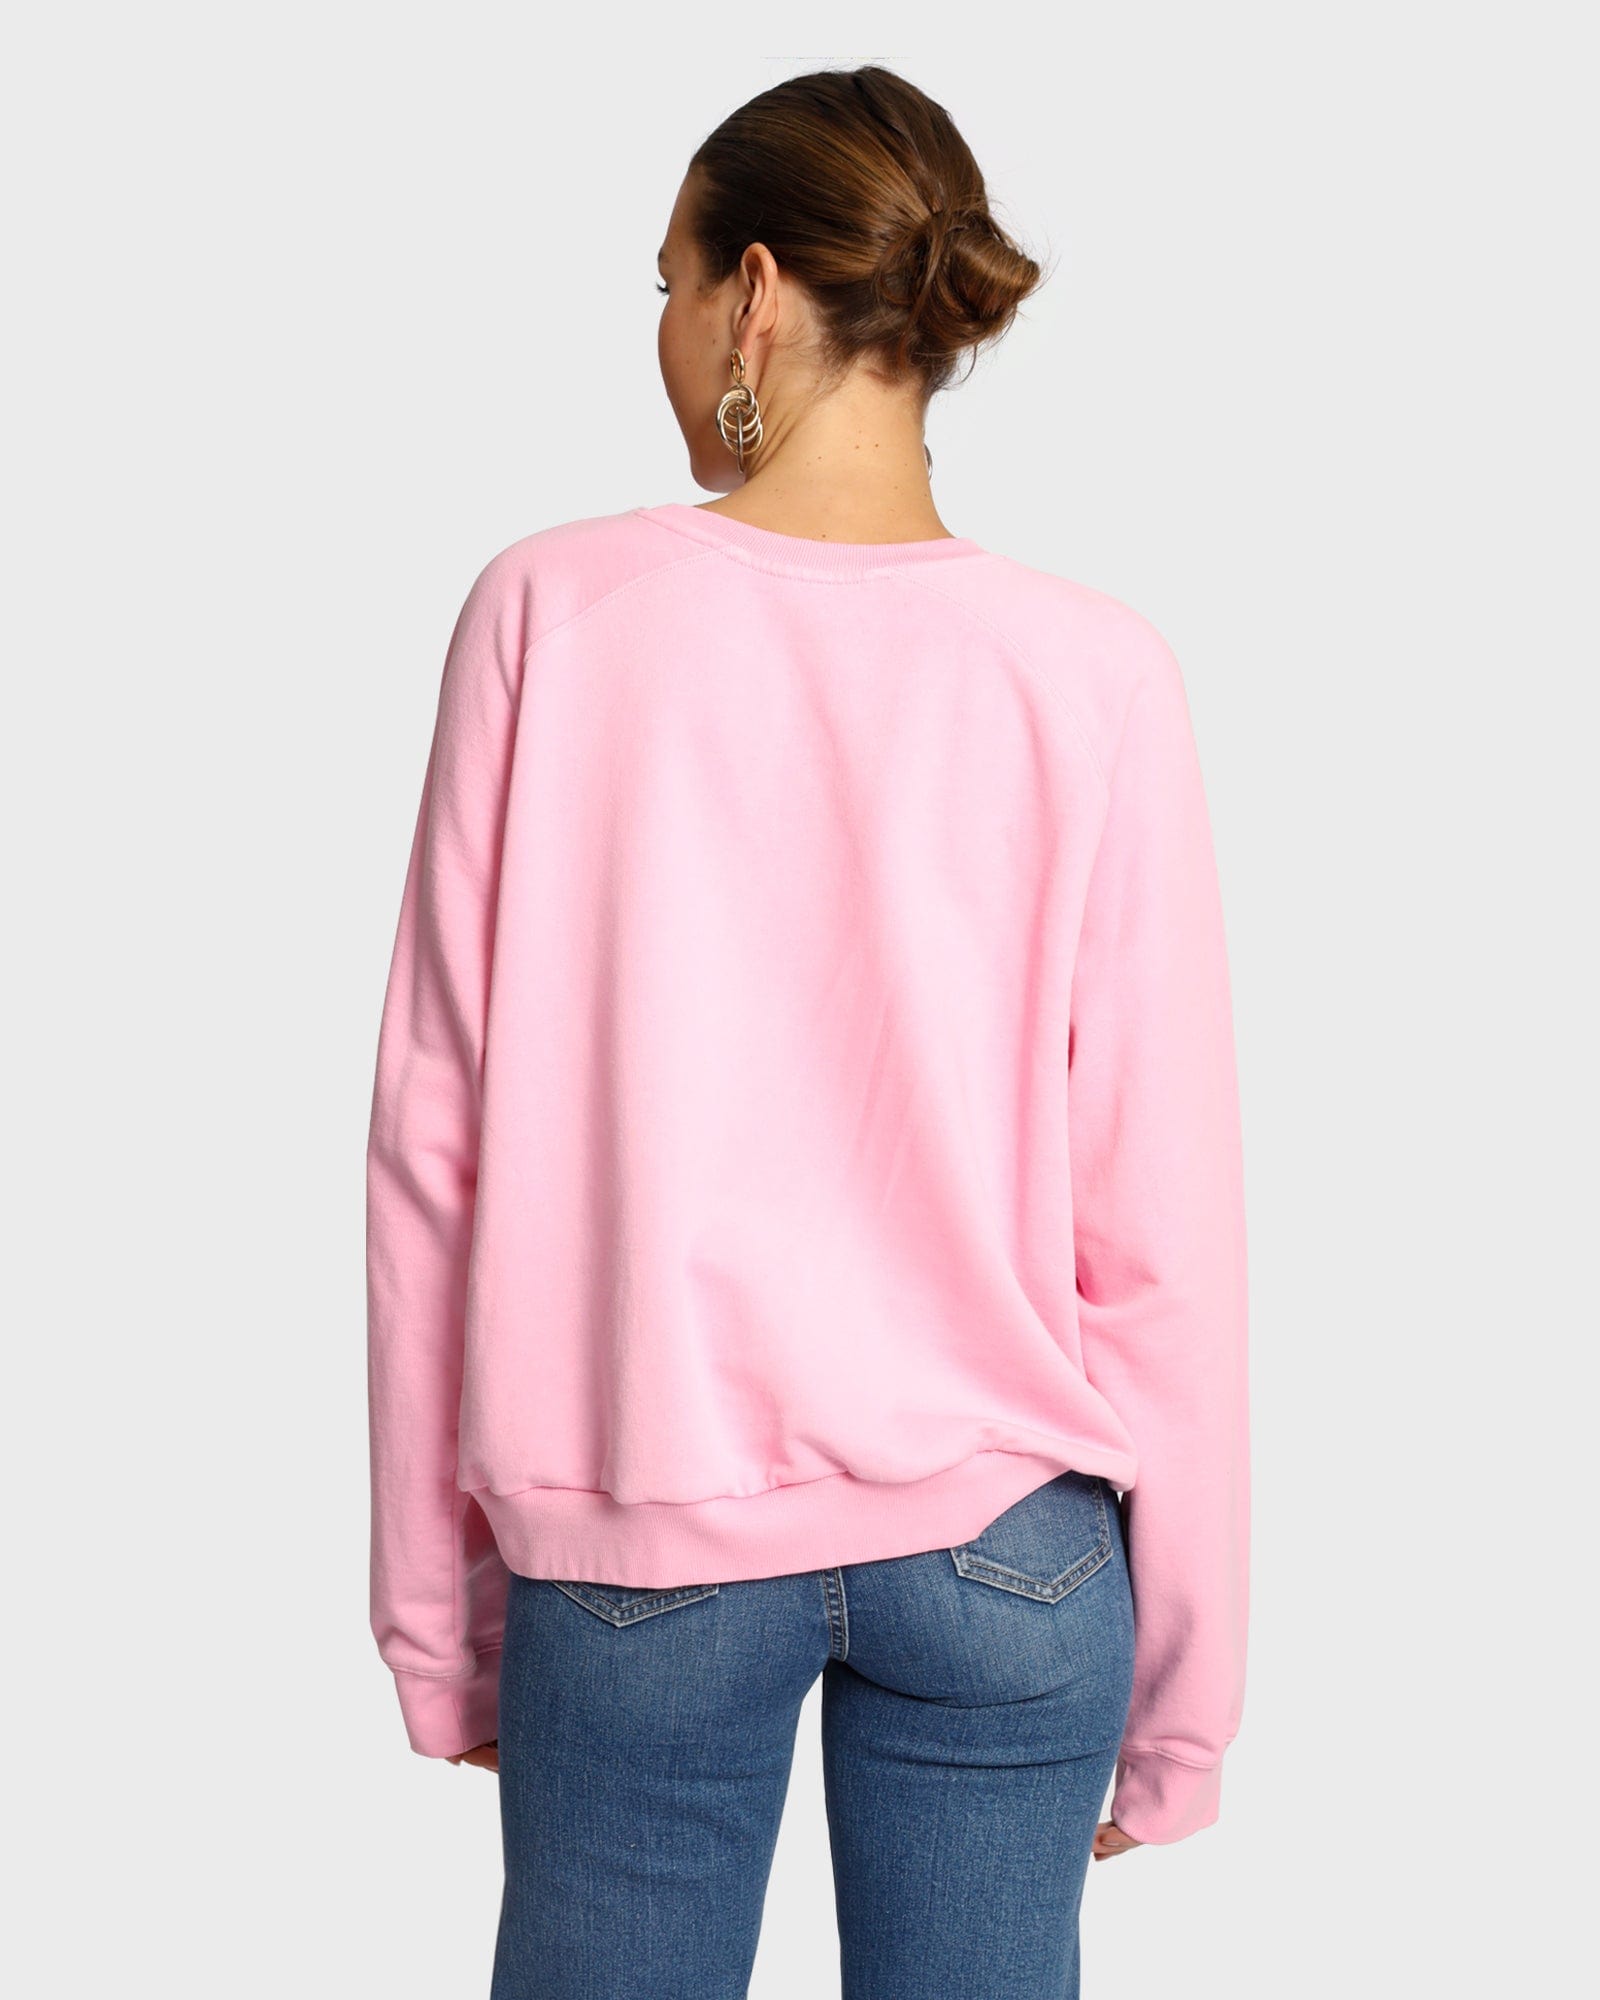 Real Thing Raglan Sweatshirt - Candy Pink